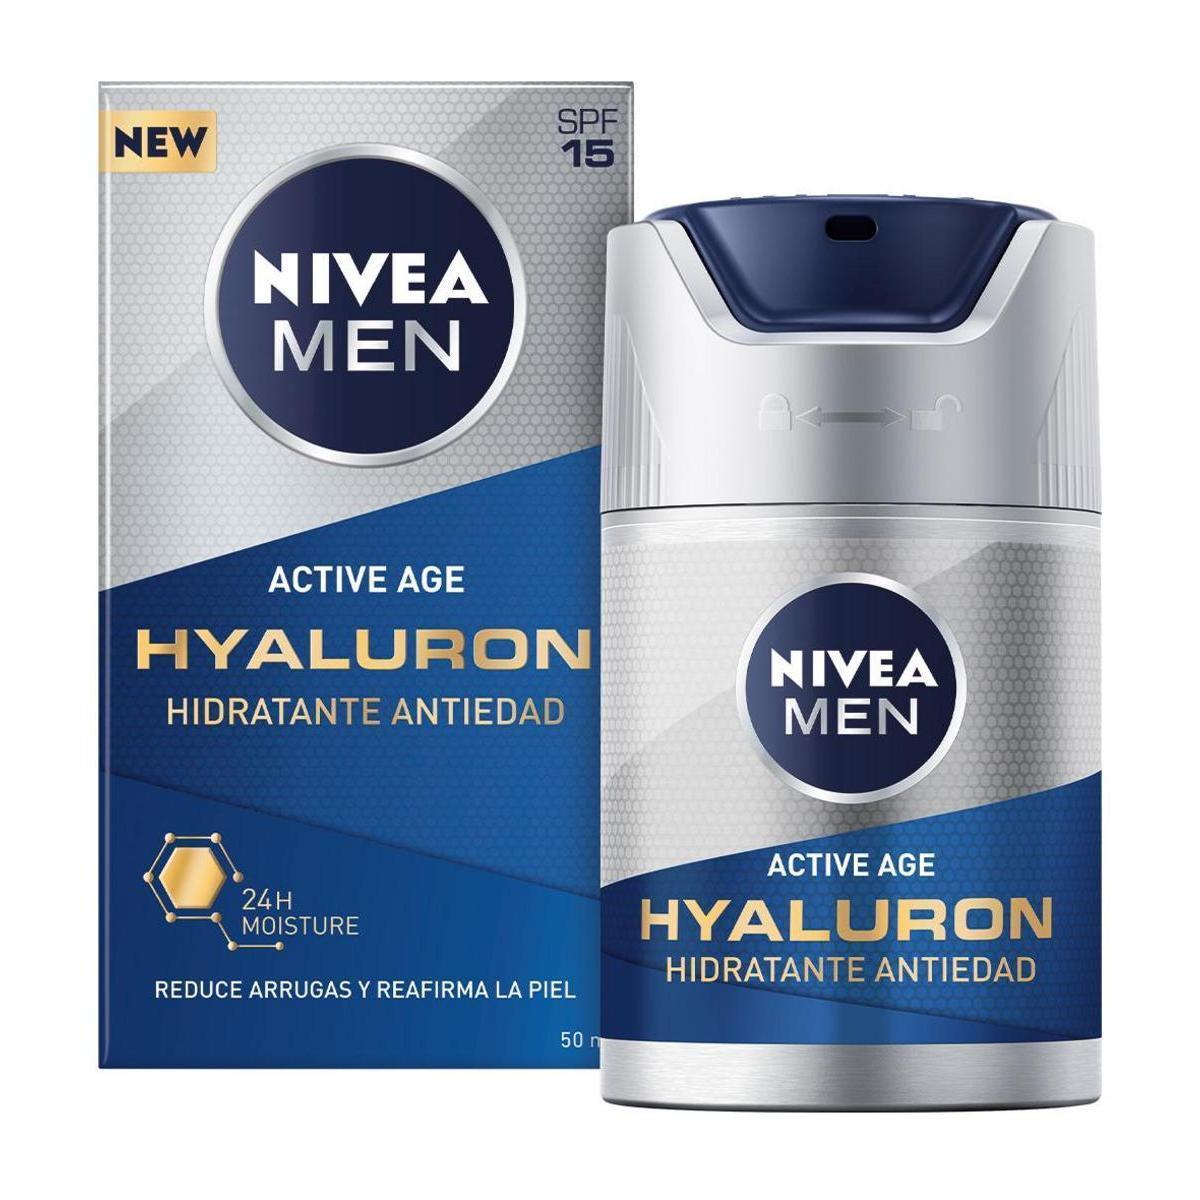 Nivea - NIVEA MEN Hyaluron Crema Hidratante Antiedad FP15 50ml